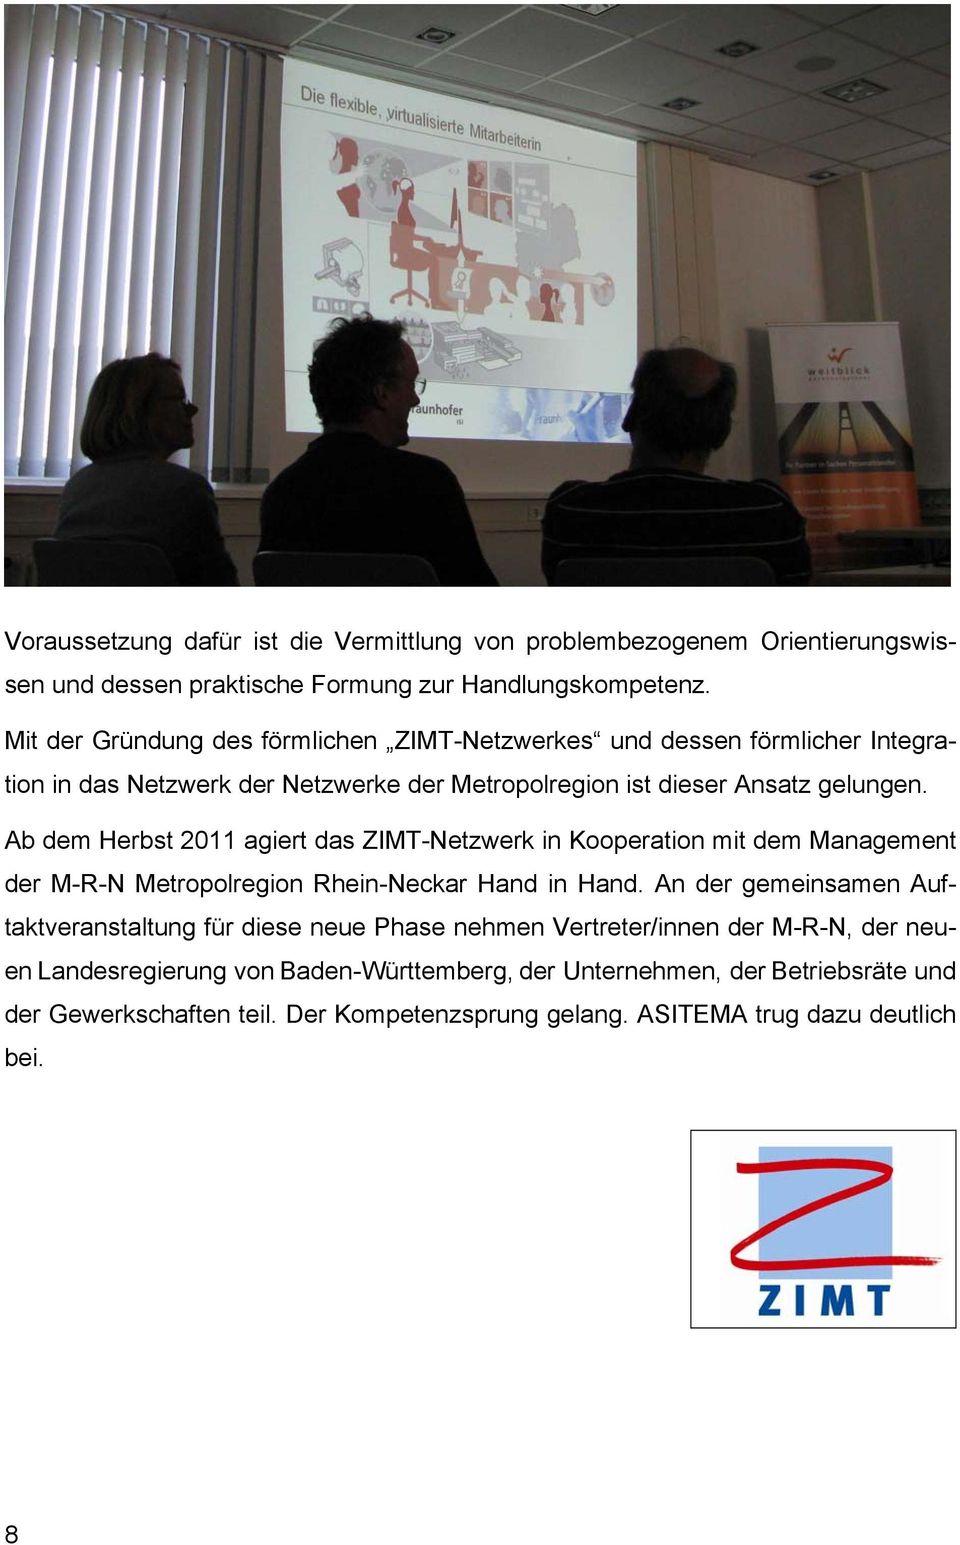 Ab dem Herbst 2011 agiert das ZIMT-Netzwerk in Kooperation mit dem Management der M-R-N Metropolregion Rhein-Neckar Hand in Hand.